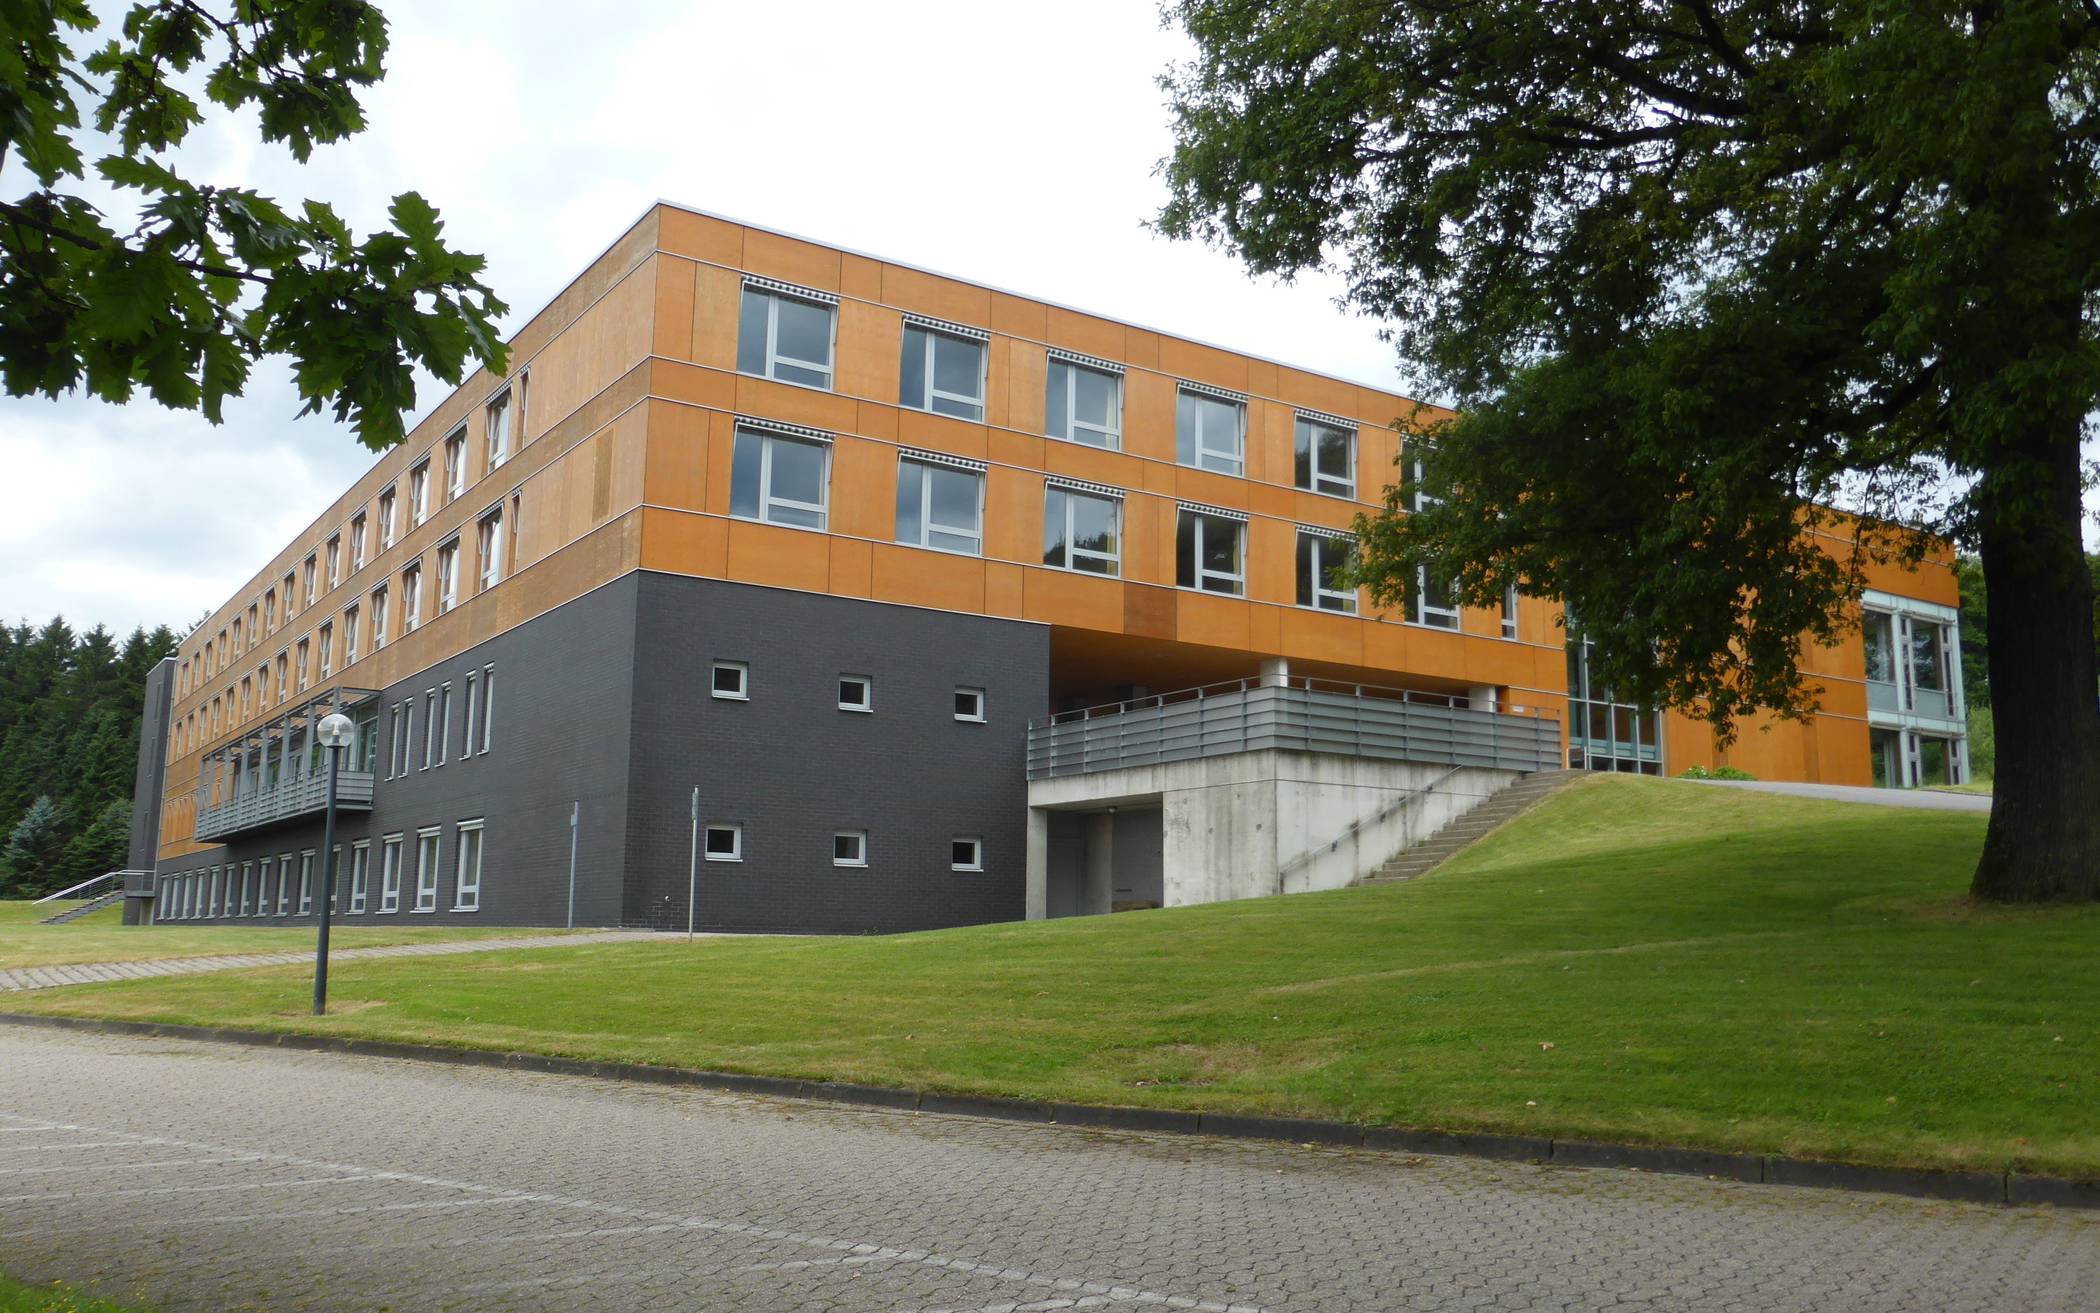  Das betreffende Gebäude Im Saalscheid in Ronsdorf (Archivbild).  